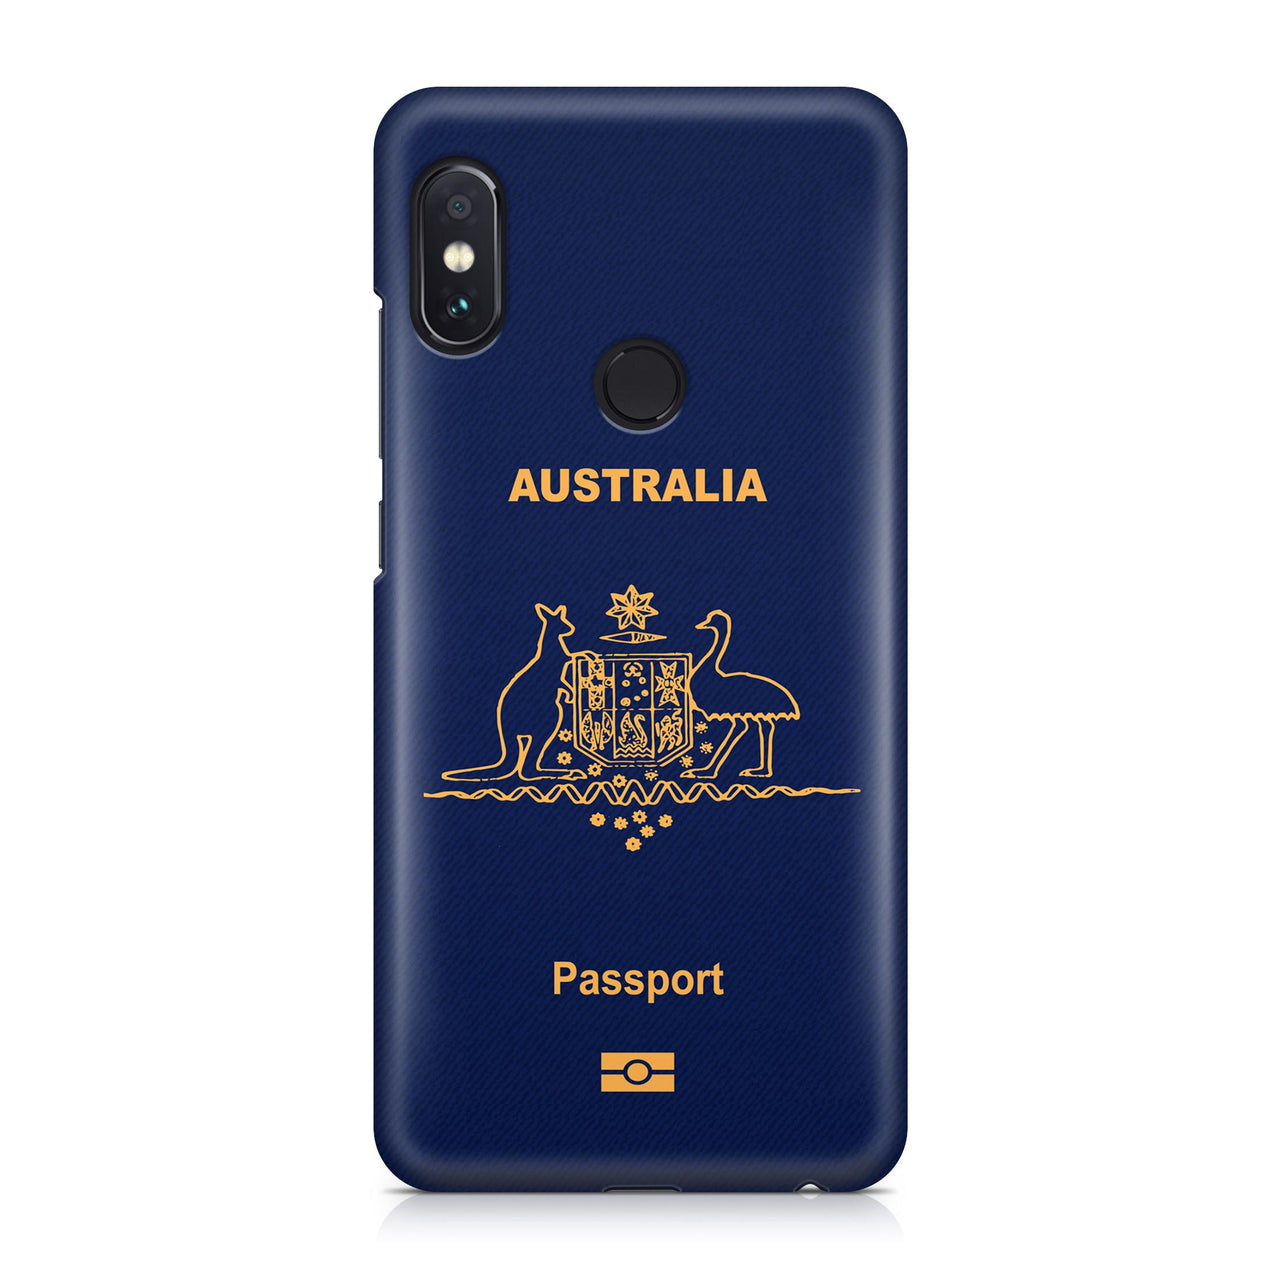 Australia Passport Designed Xiaomi Cases